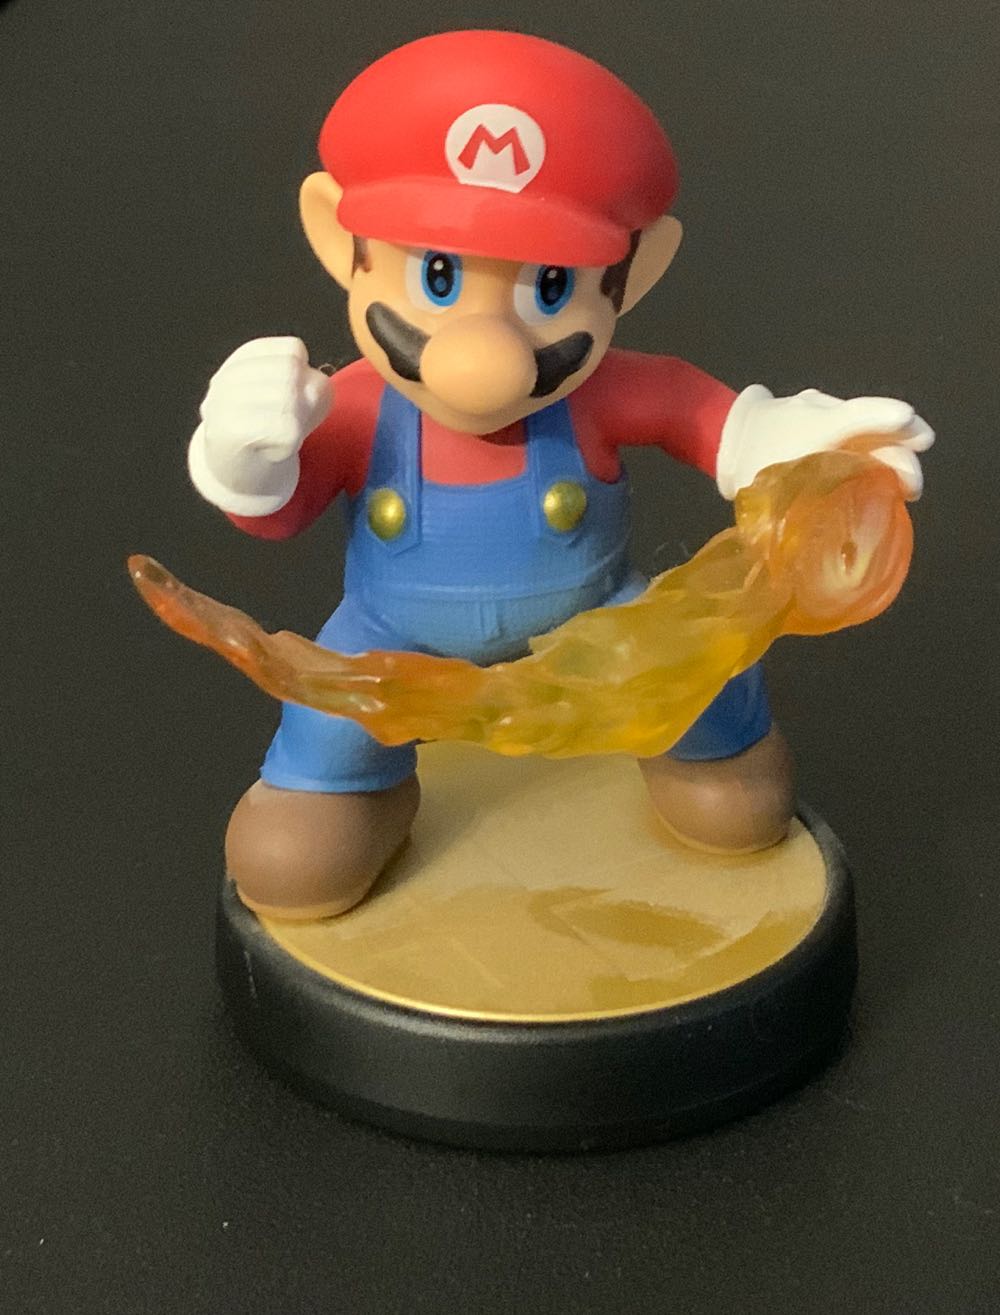 Mario - Nintendo (Series: Super Smash Bros.) action figure collectible [Barcode 0045496352363] - Main Image 2